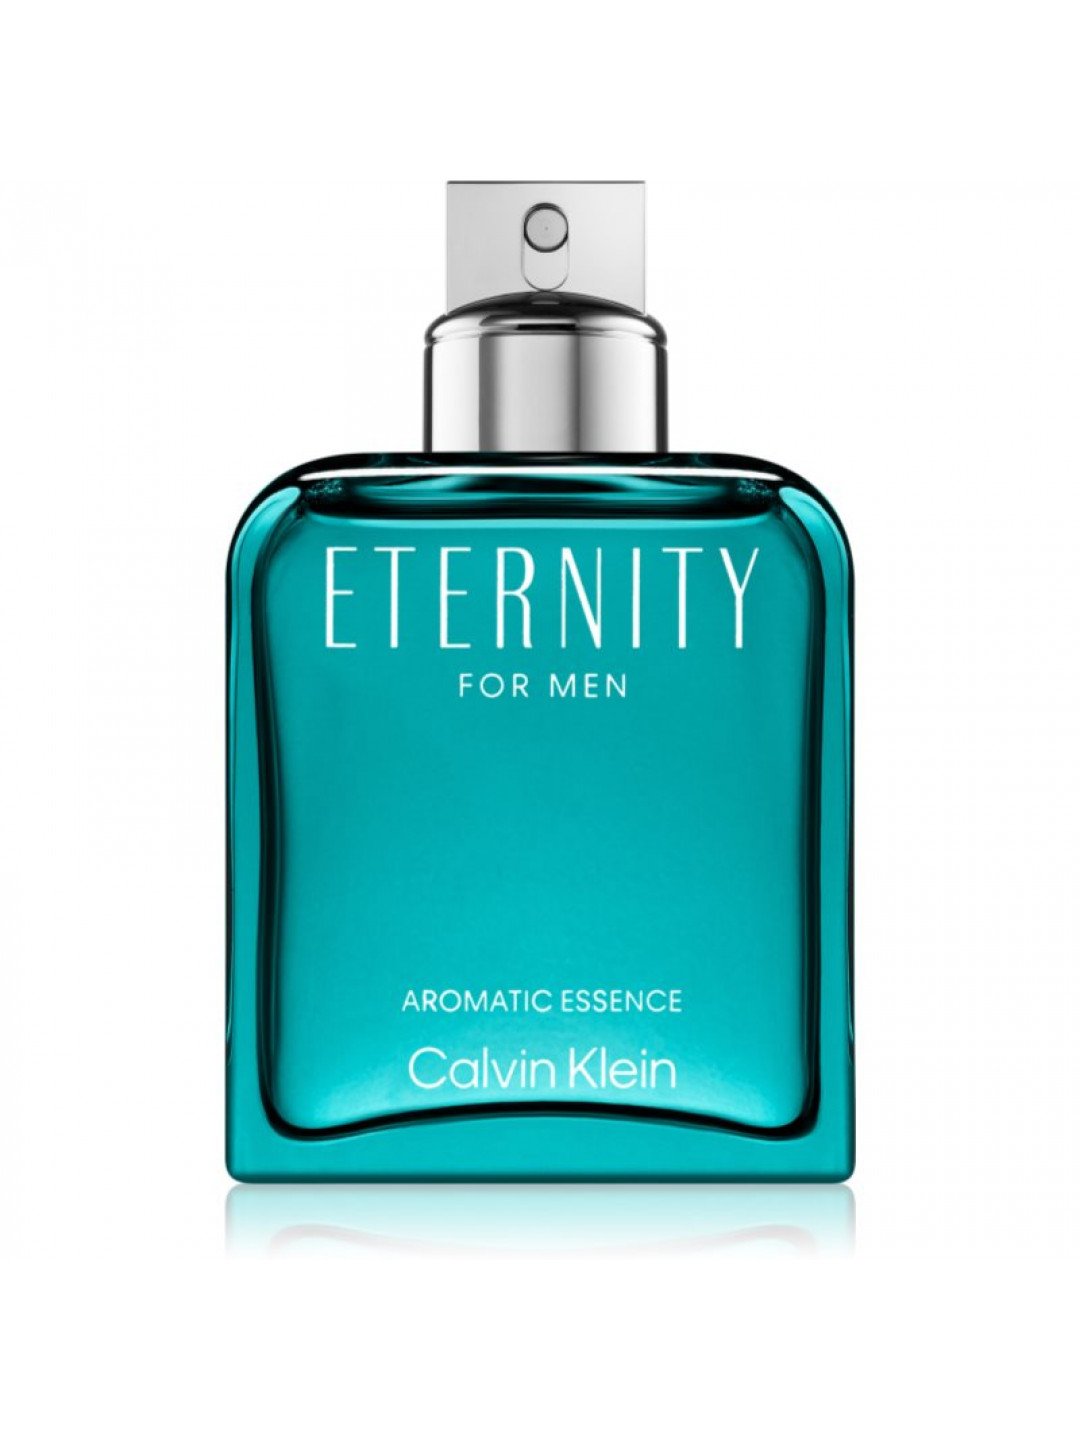 Calvin Klein Eternity for Men Aromatic Essence parfémovaná voda pro muže 50 ml